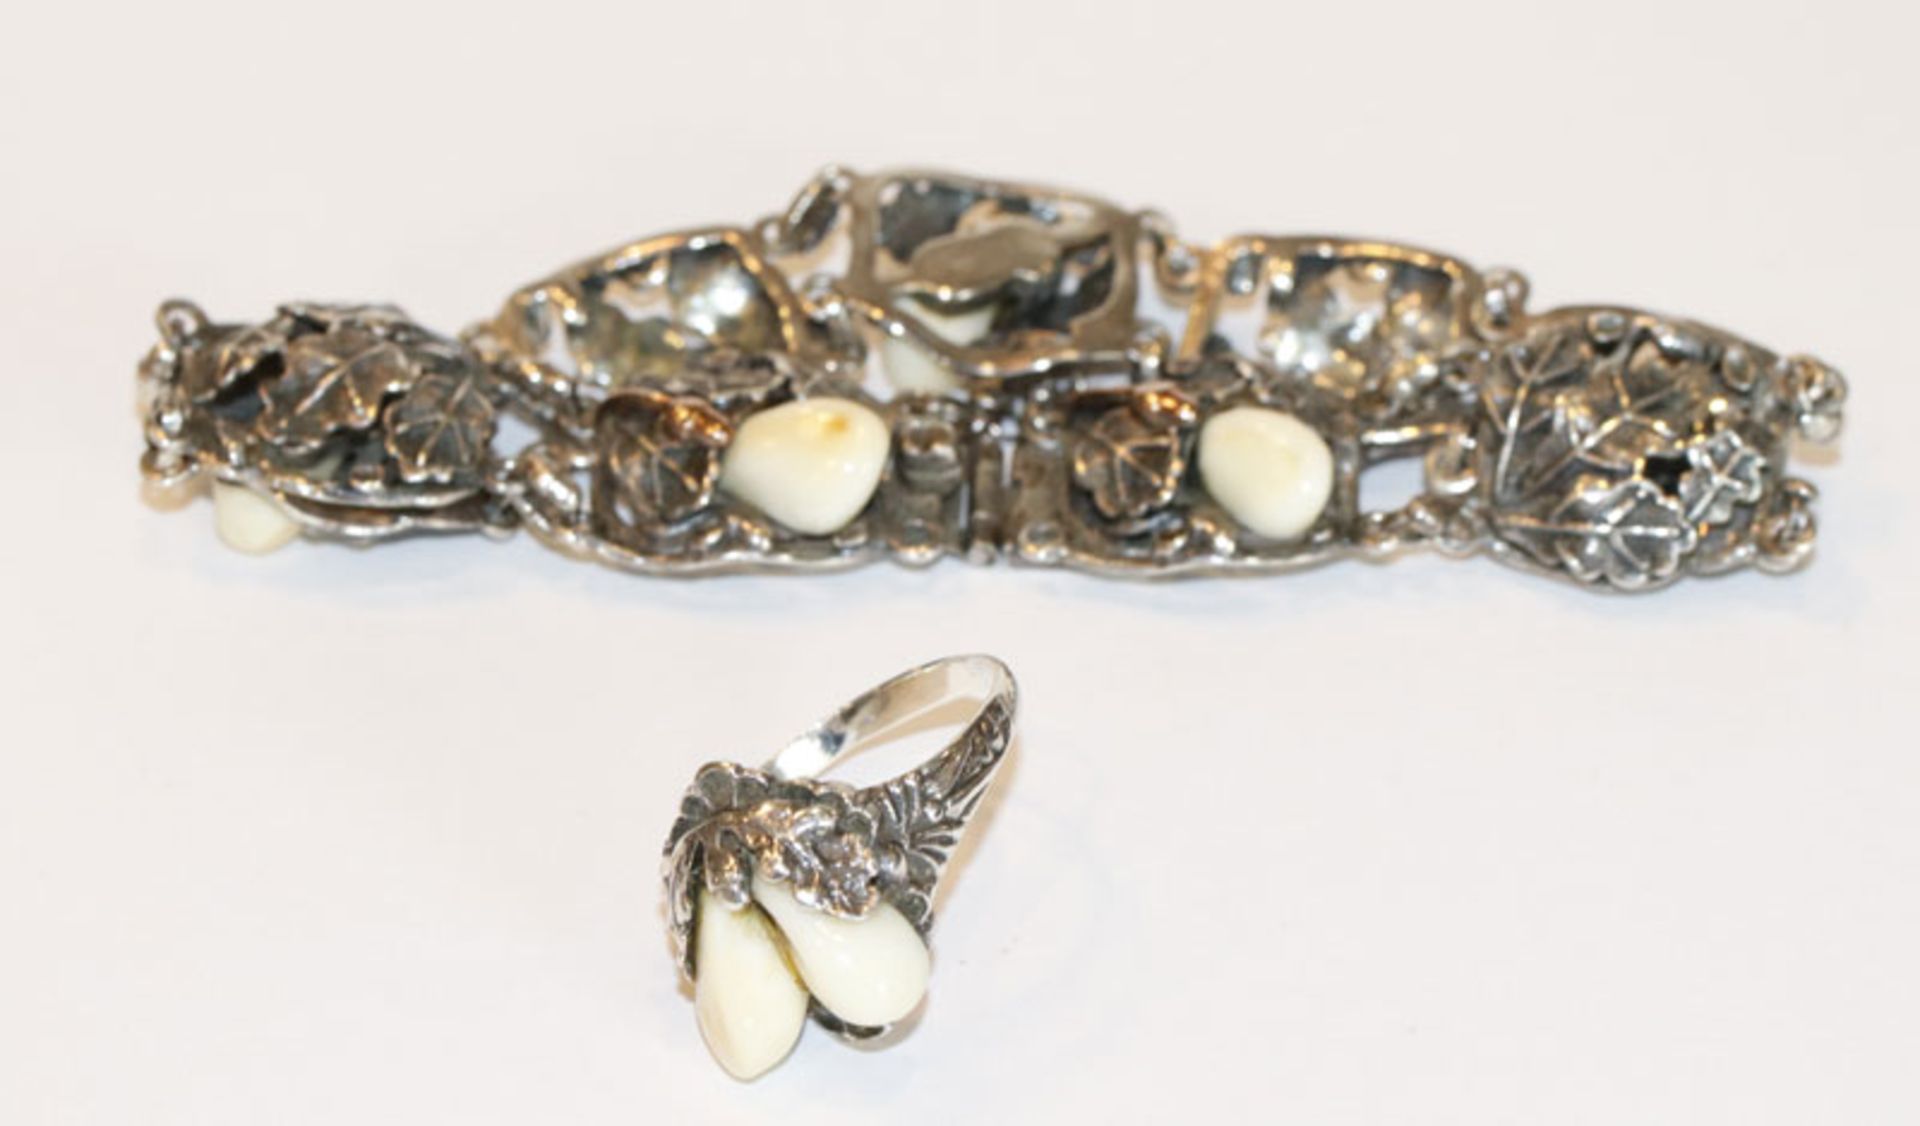 Silber Trachten-Armband mit plastischem Eichenlaub und Grandeln, L 20 cm, und Grandel-Ring, Gr.